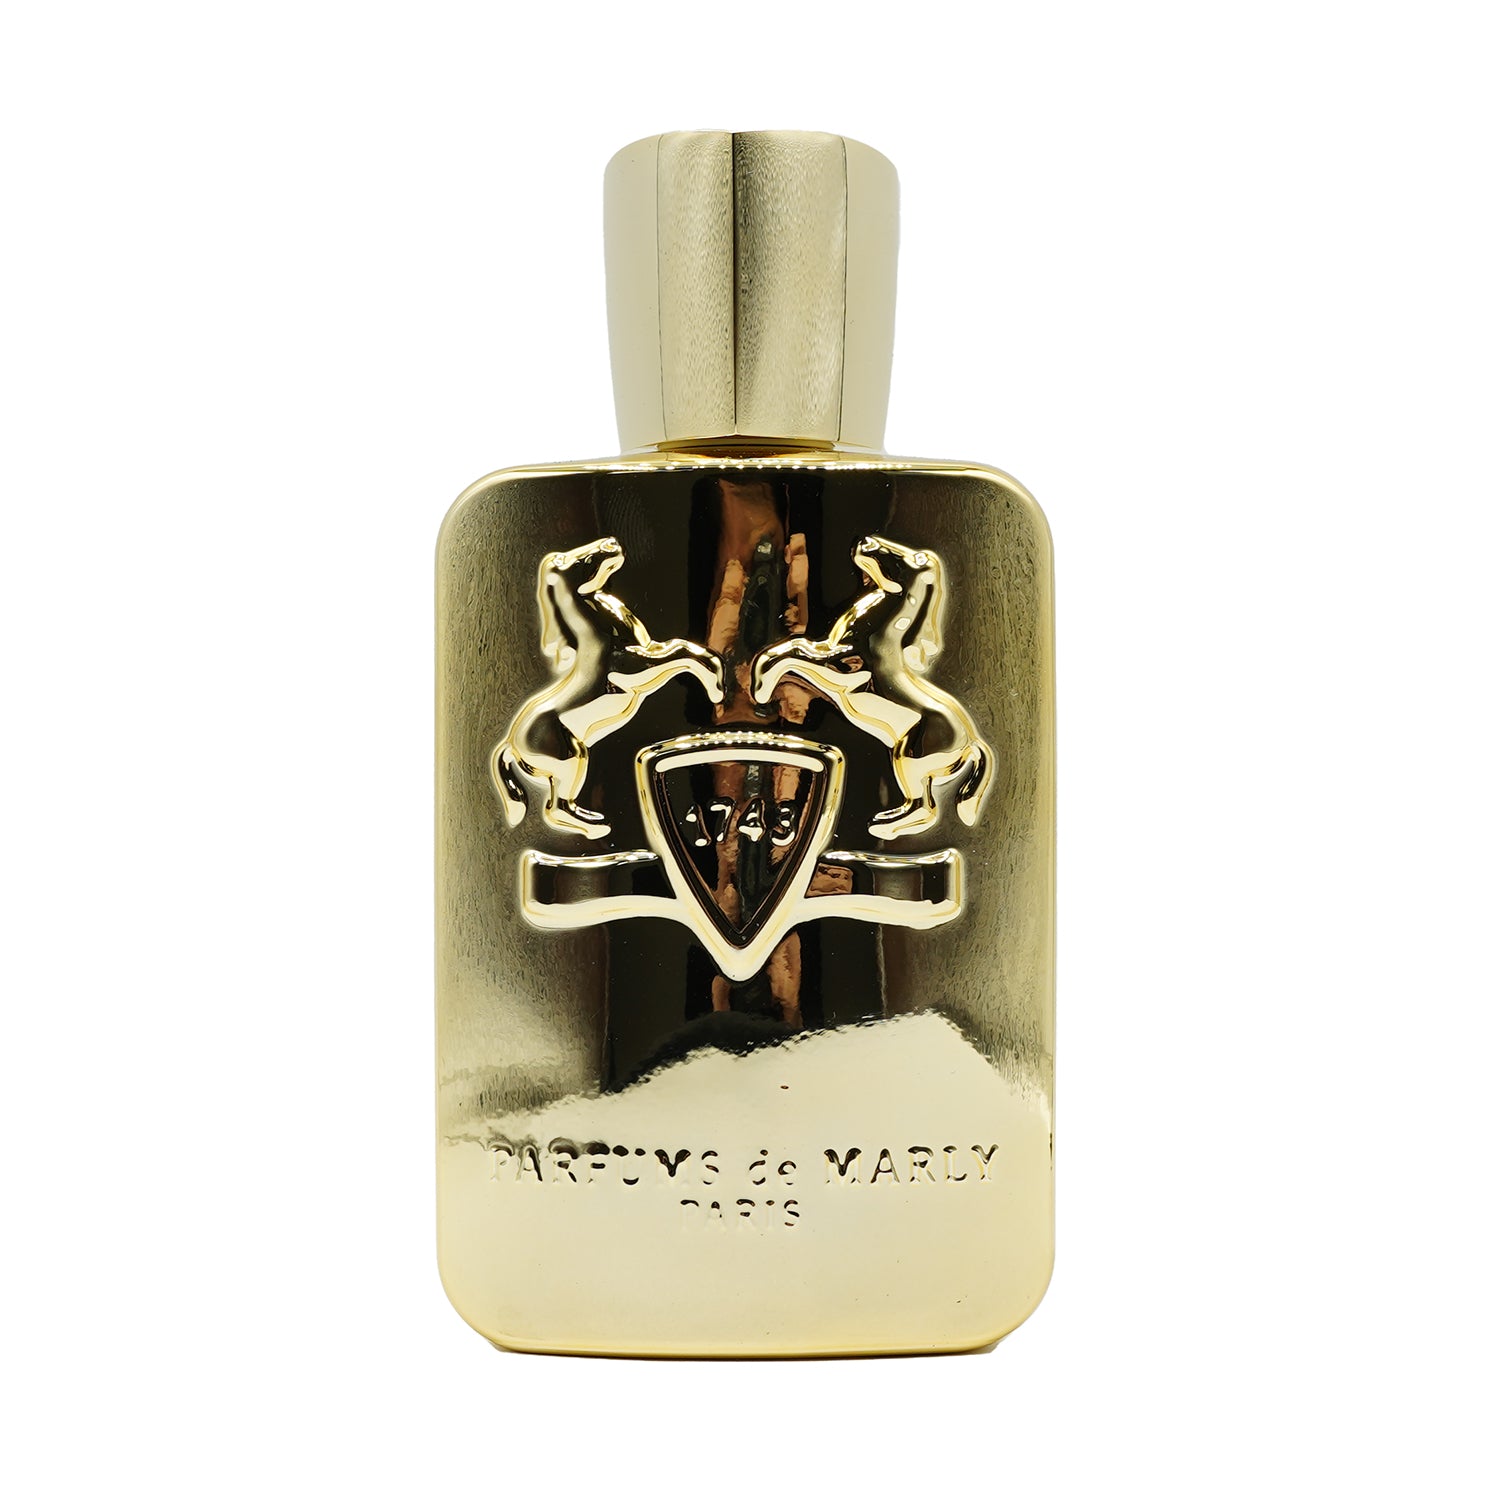 Perfumes de Marly | Godolphin bottling 